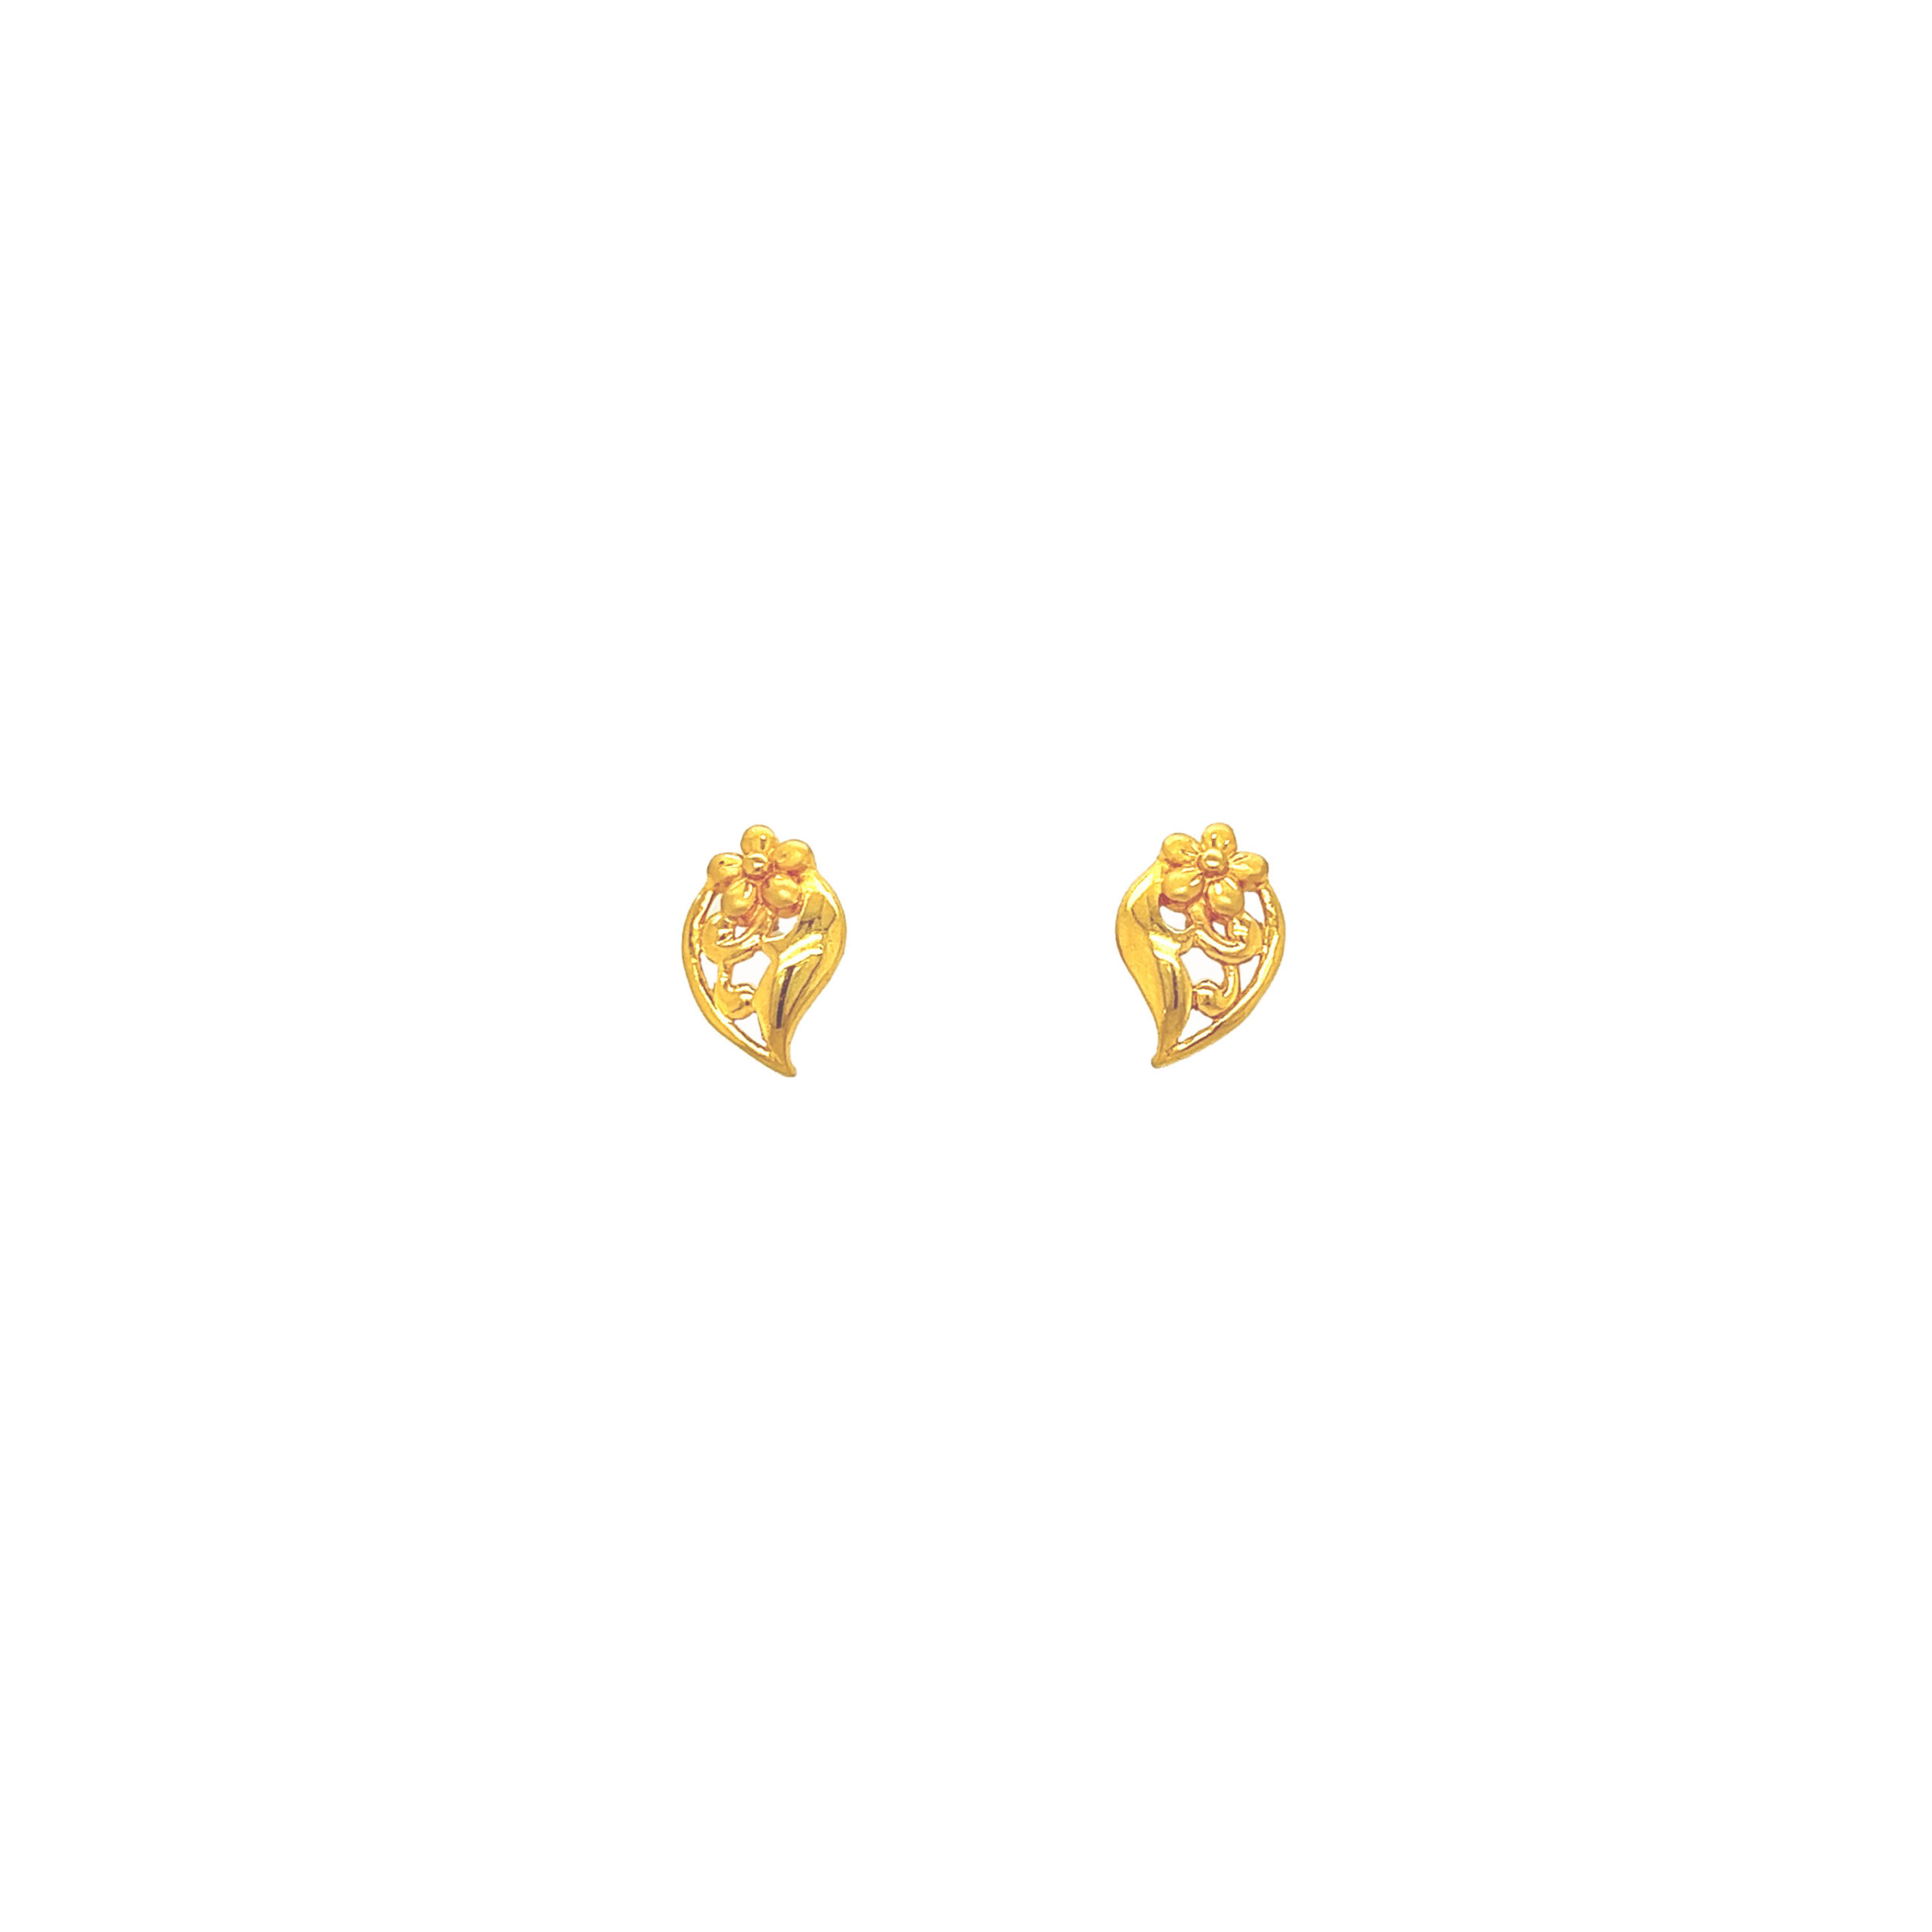 Charusmita Gold Stud Earrings by Vummidi Bangaru Jewellers